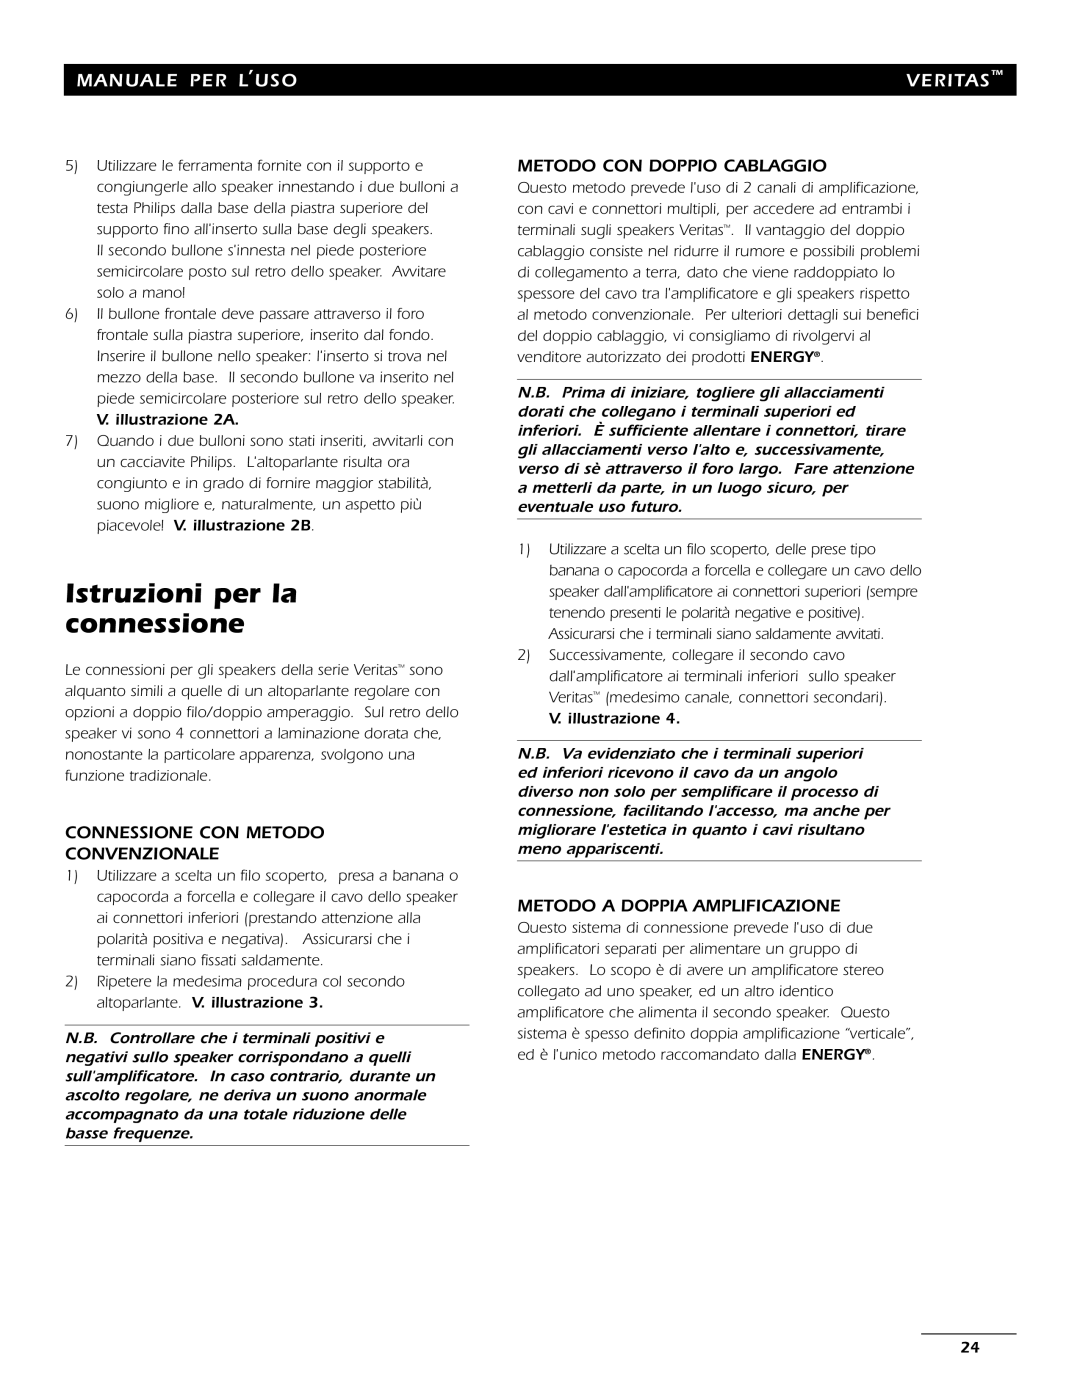 Energy Speaker Systems 7AI Istruzioni per la connessione, Connessione Con Metodo Convenzionale, Manuale Per L’Uso, Veritas 